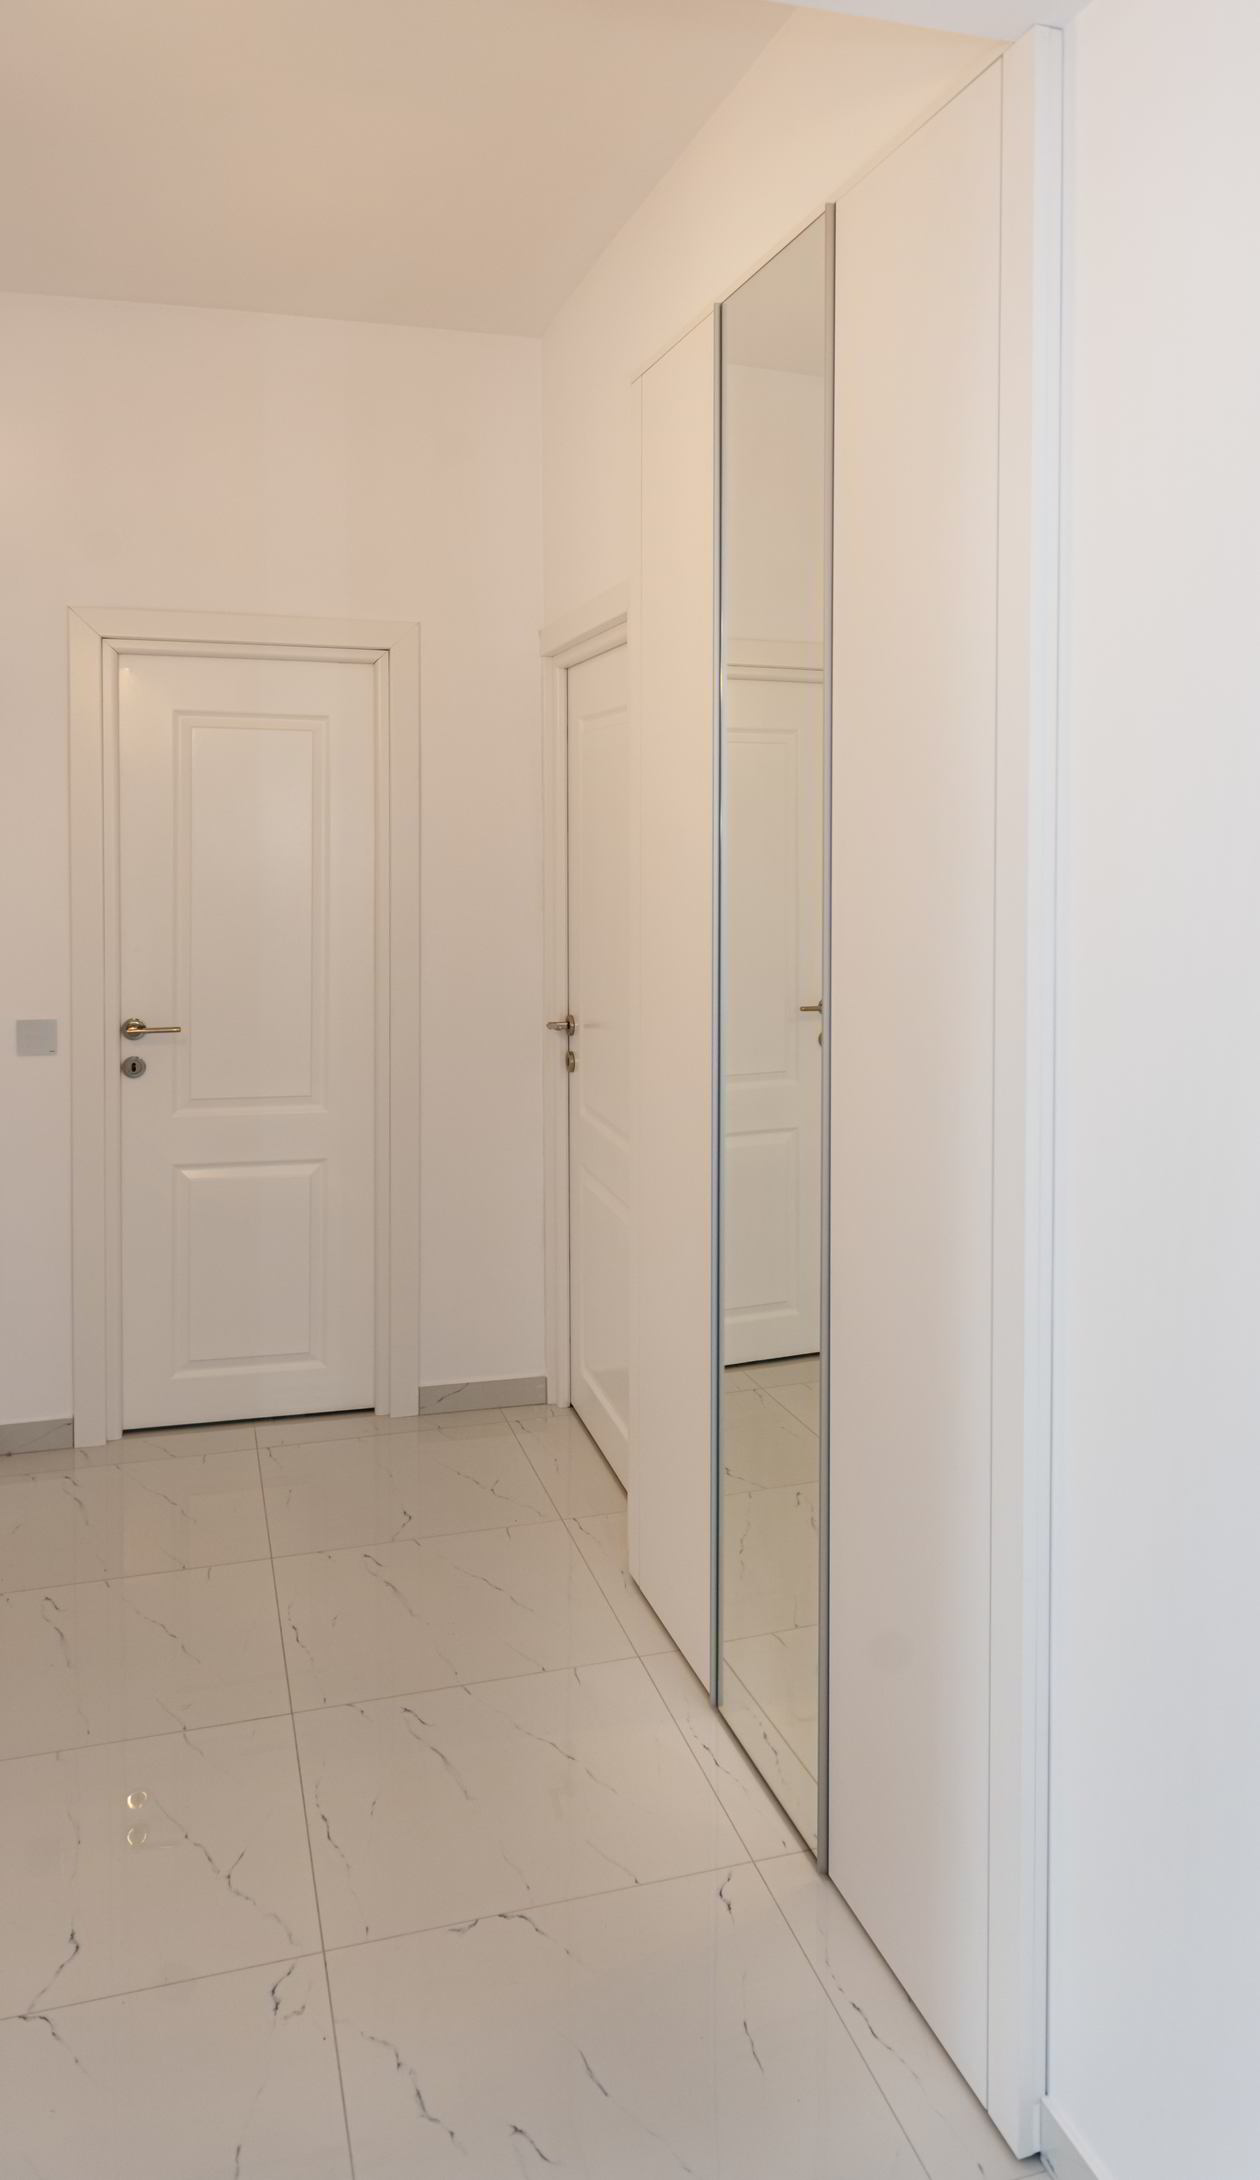 Apartament cu 2 camere, locuinta de vacanta in Constanta, 08 Februarie 2022, Mobilat partial COD.13815